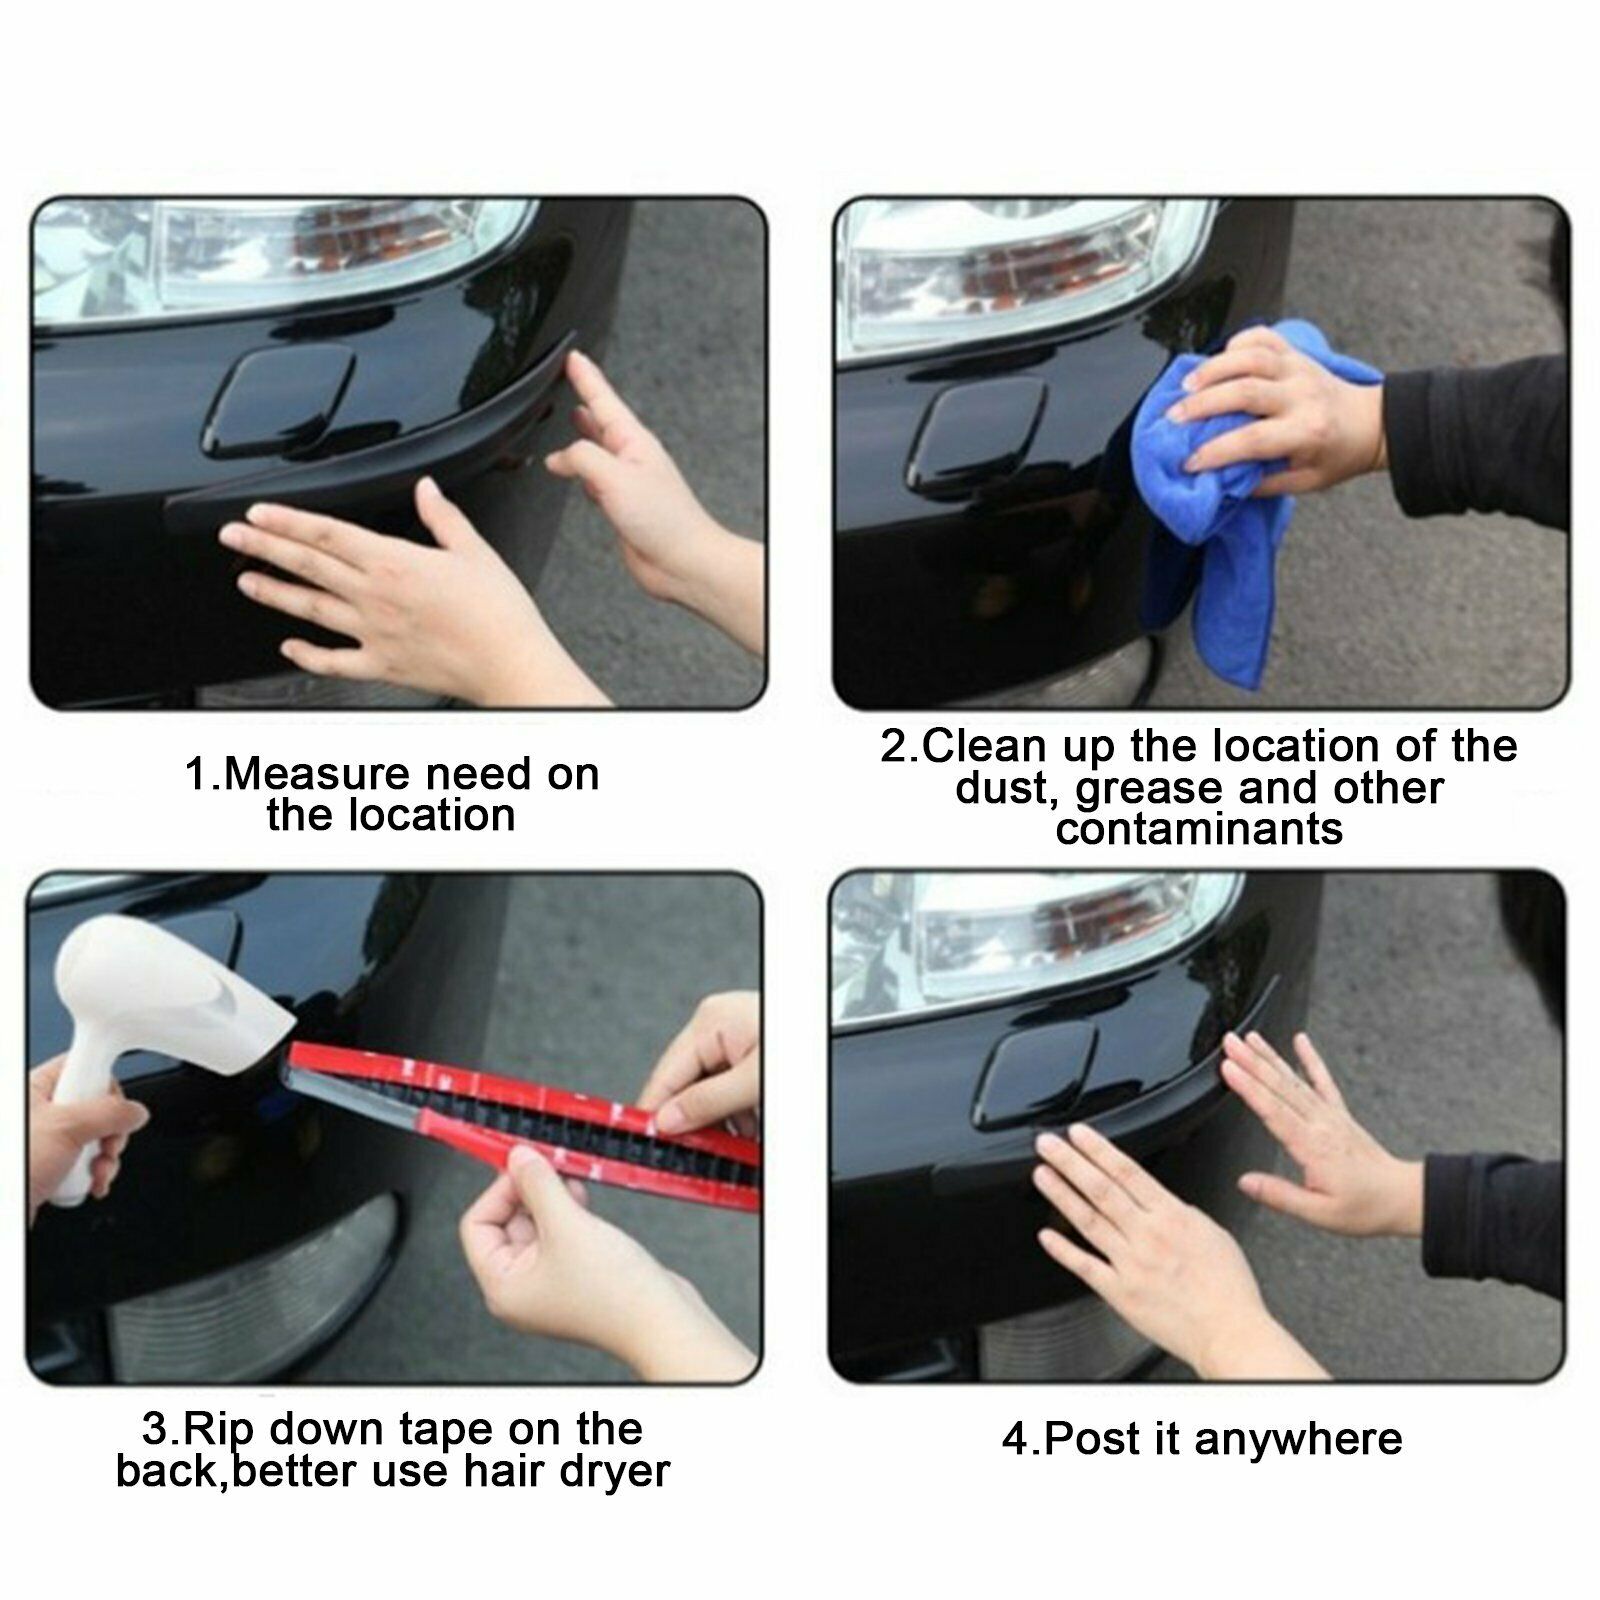 2pcs Car Carbon Fiber Anti-rub Unique Black Strip Bumper Corner Protector Guard